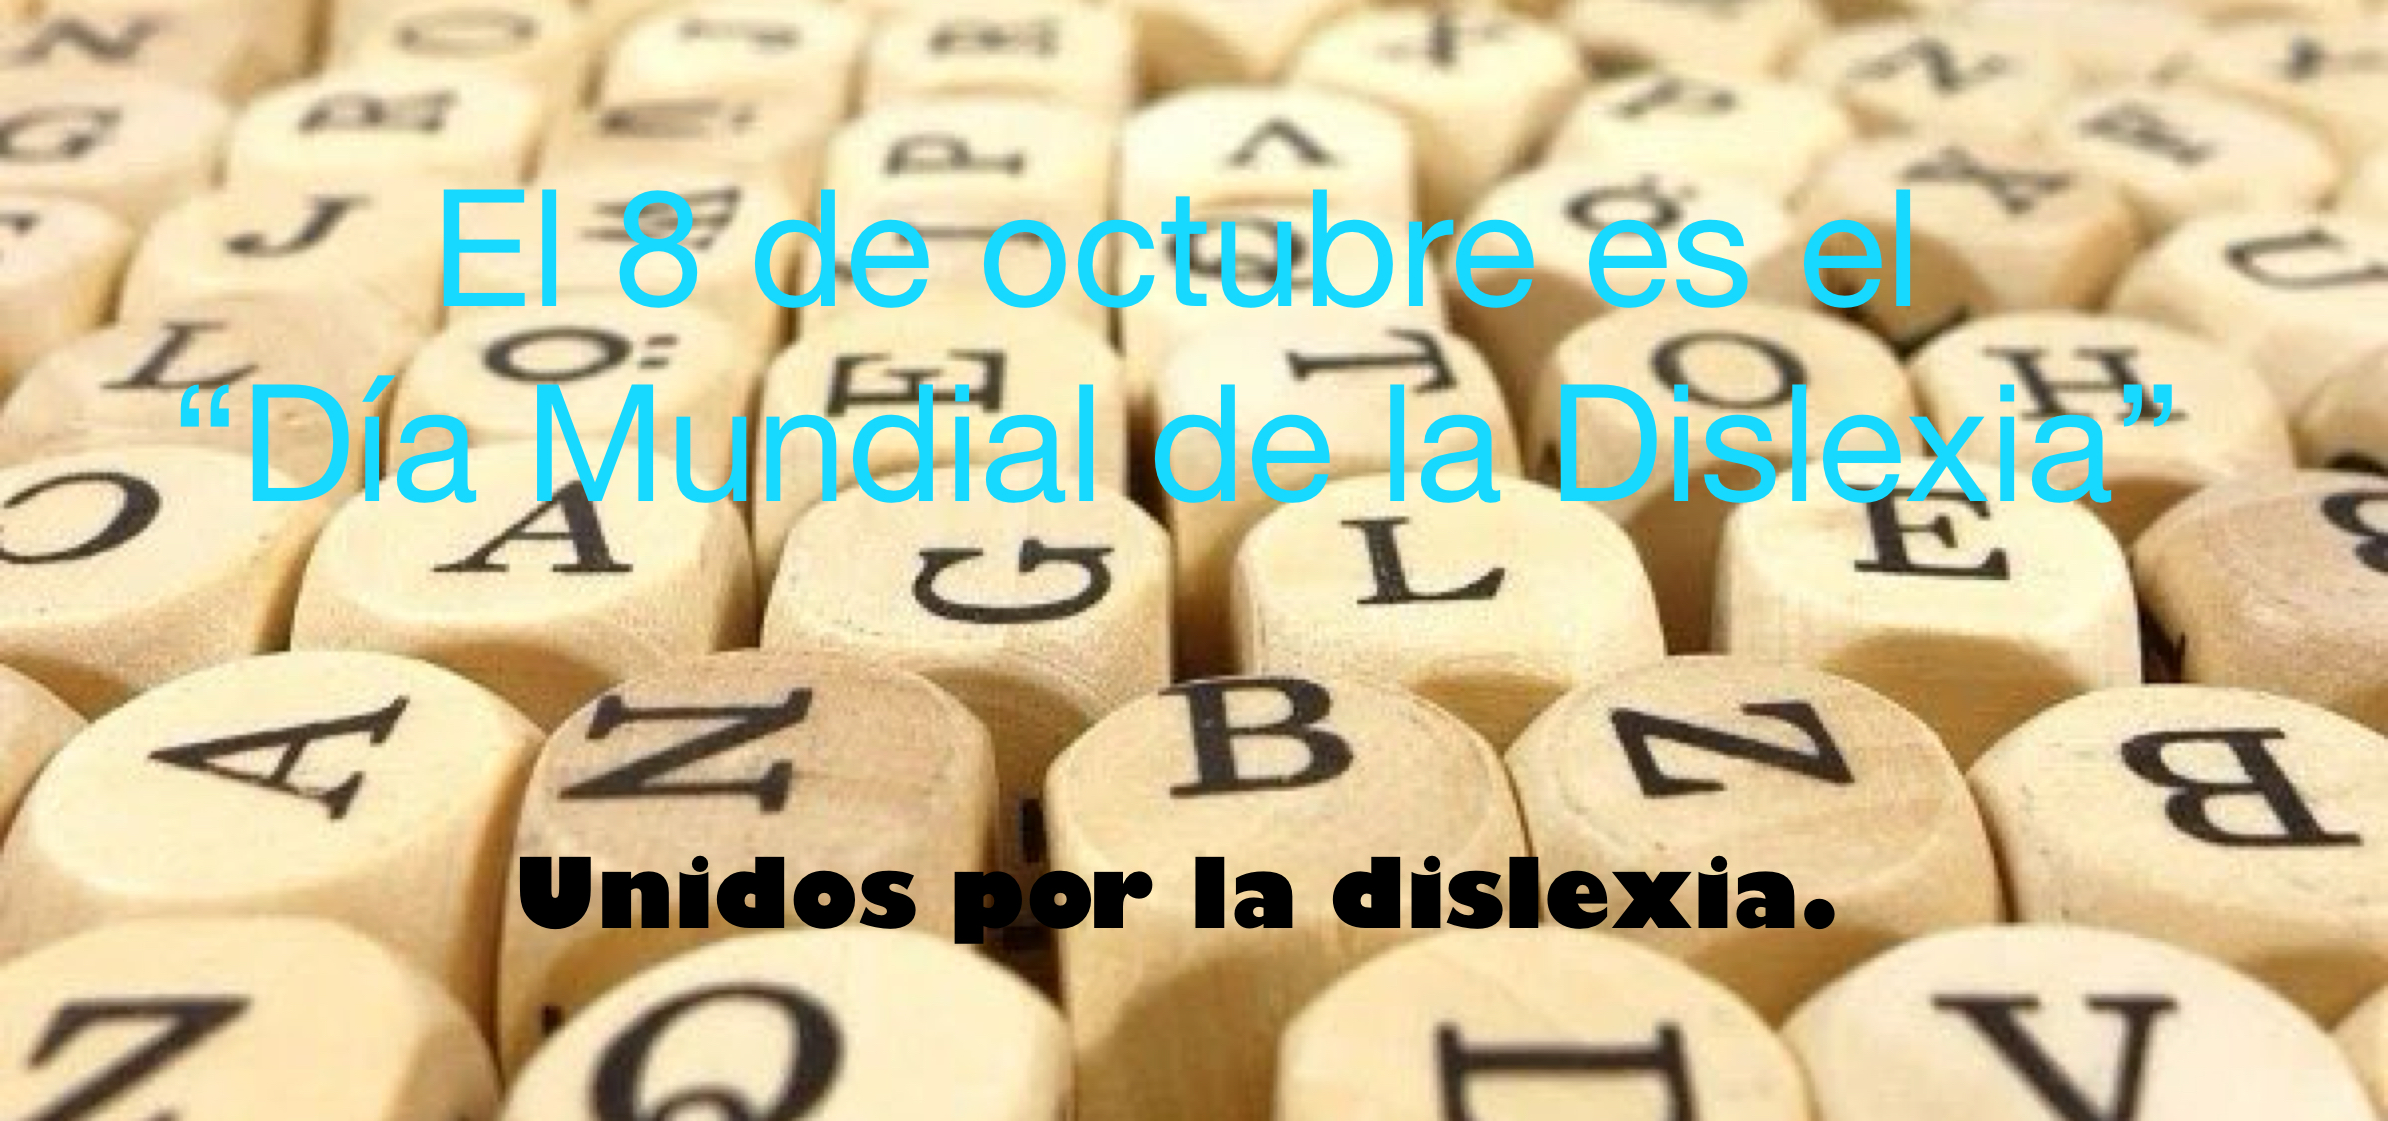 El 8 de octubre es el “Día Mundial de la Dislexia”